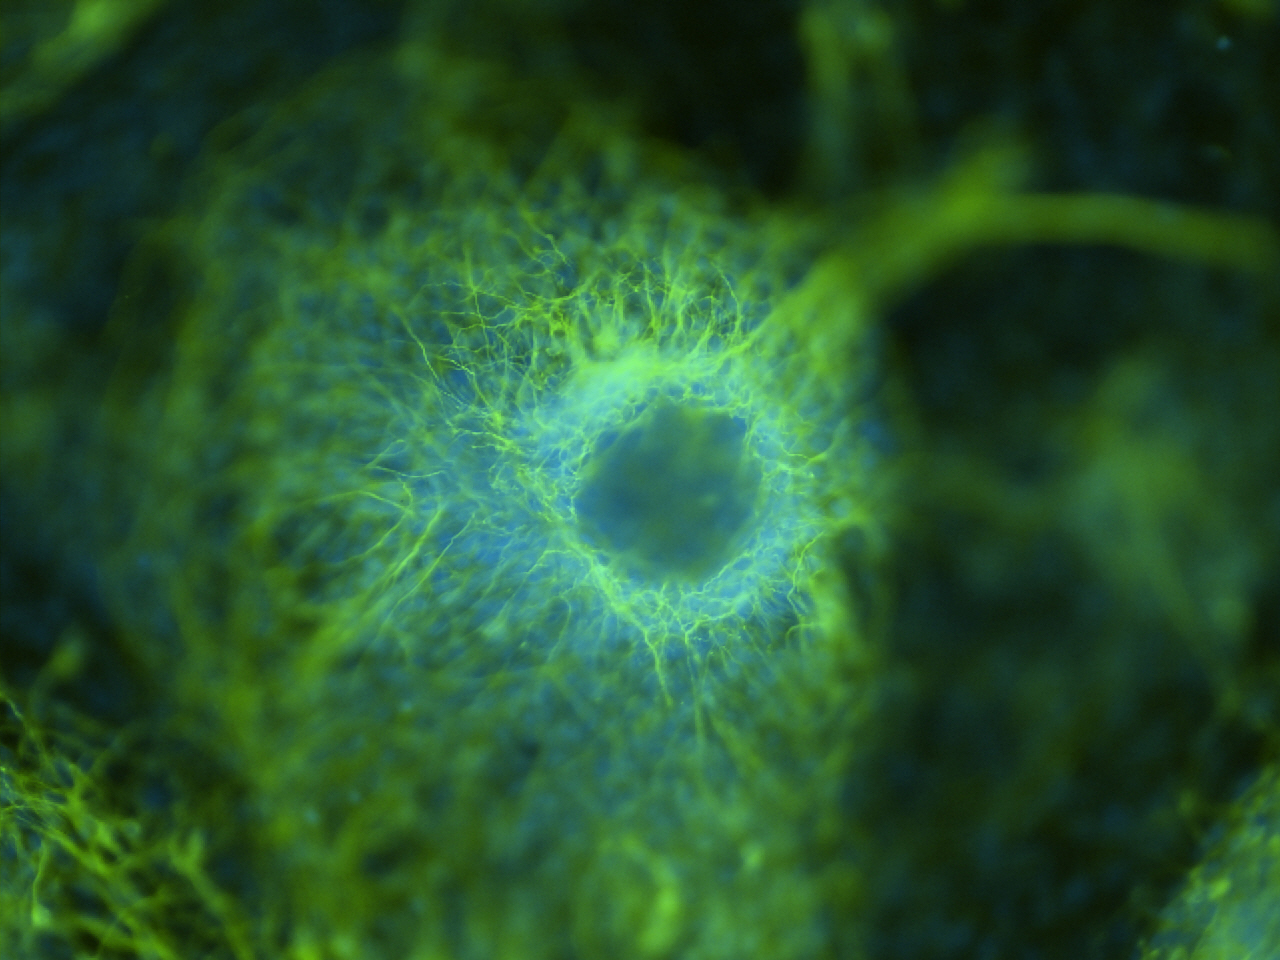 Un grupo de neuronas en desarrollo se tiñeron de verde y núcleos teñidos de azul